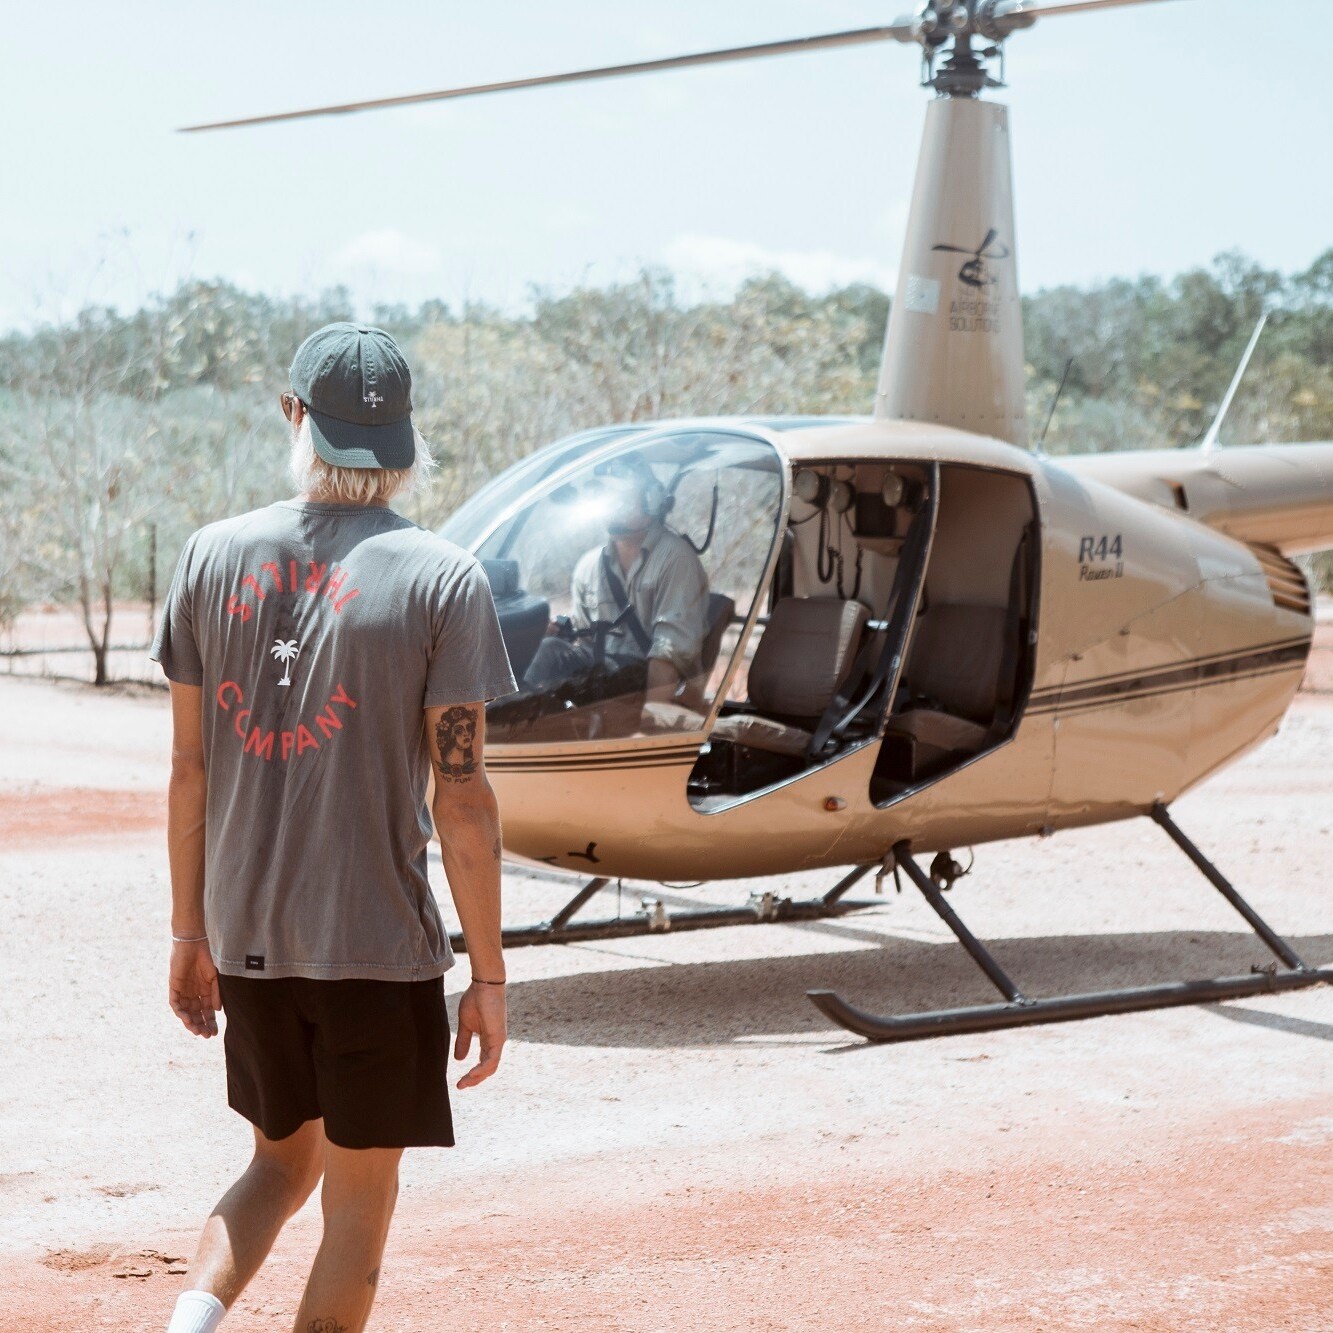 Pärchen auf einer Helikopter-Kneipentour in der Nähe von Darwin © TourismNT